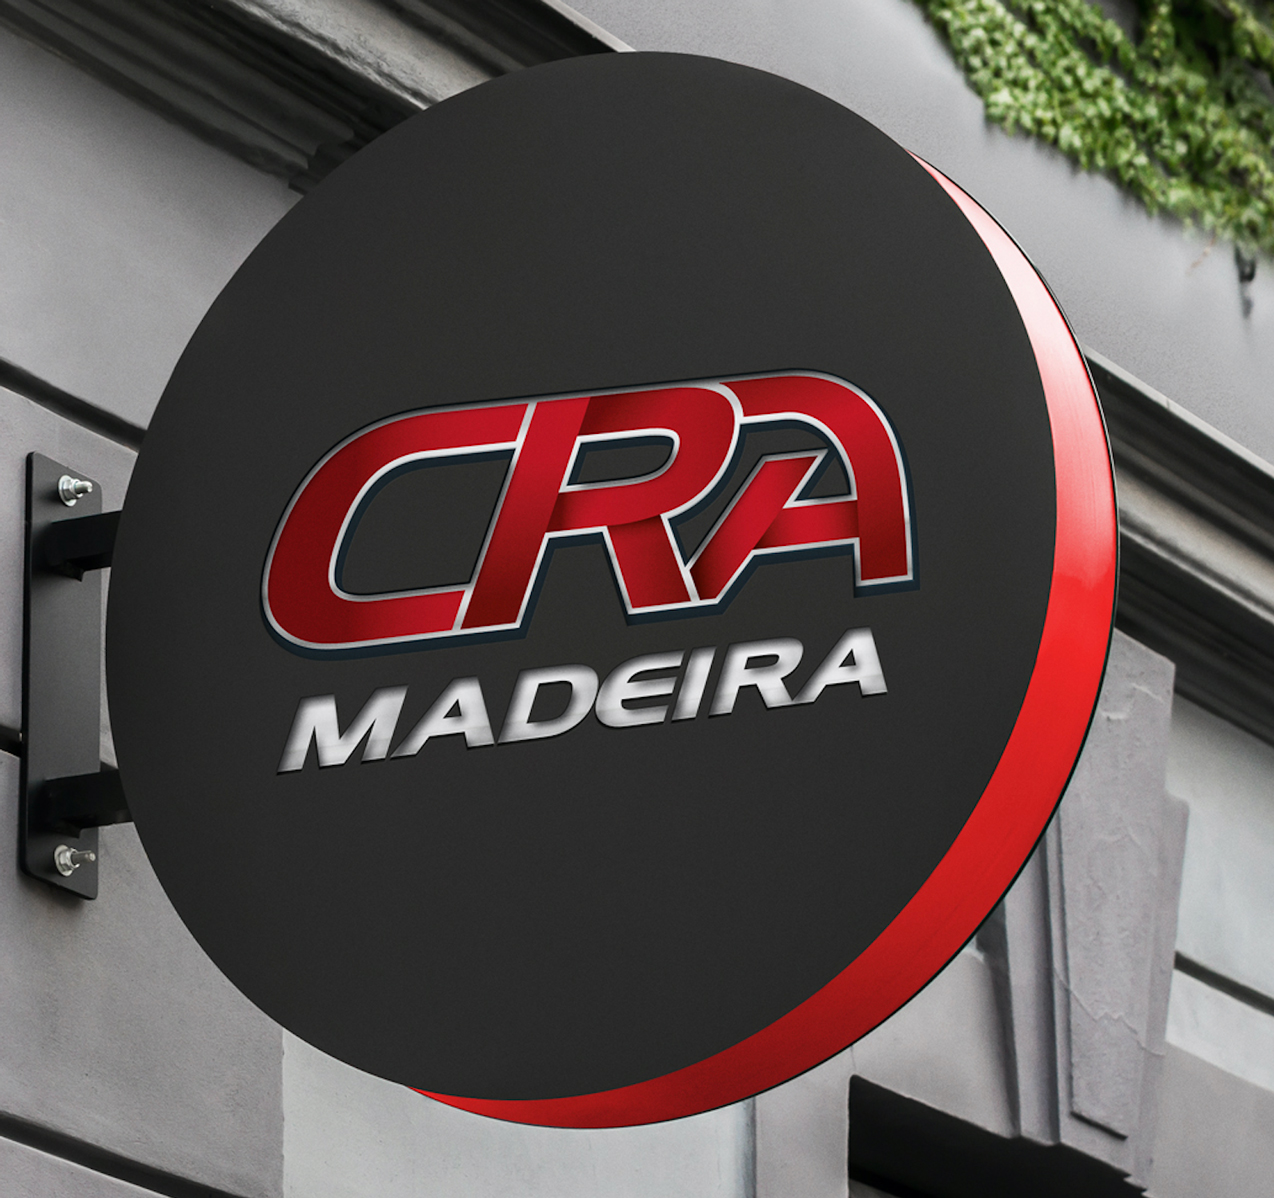 CRA Madeira | 2017 | Portugal